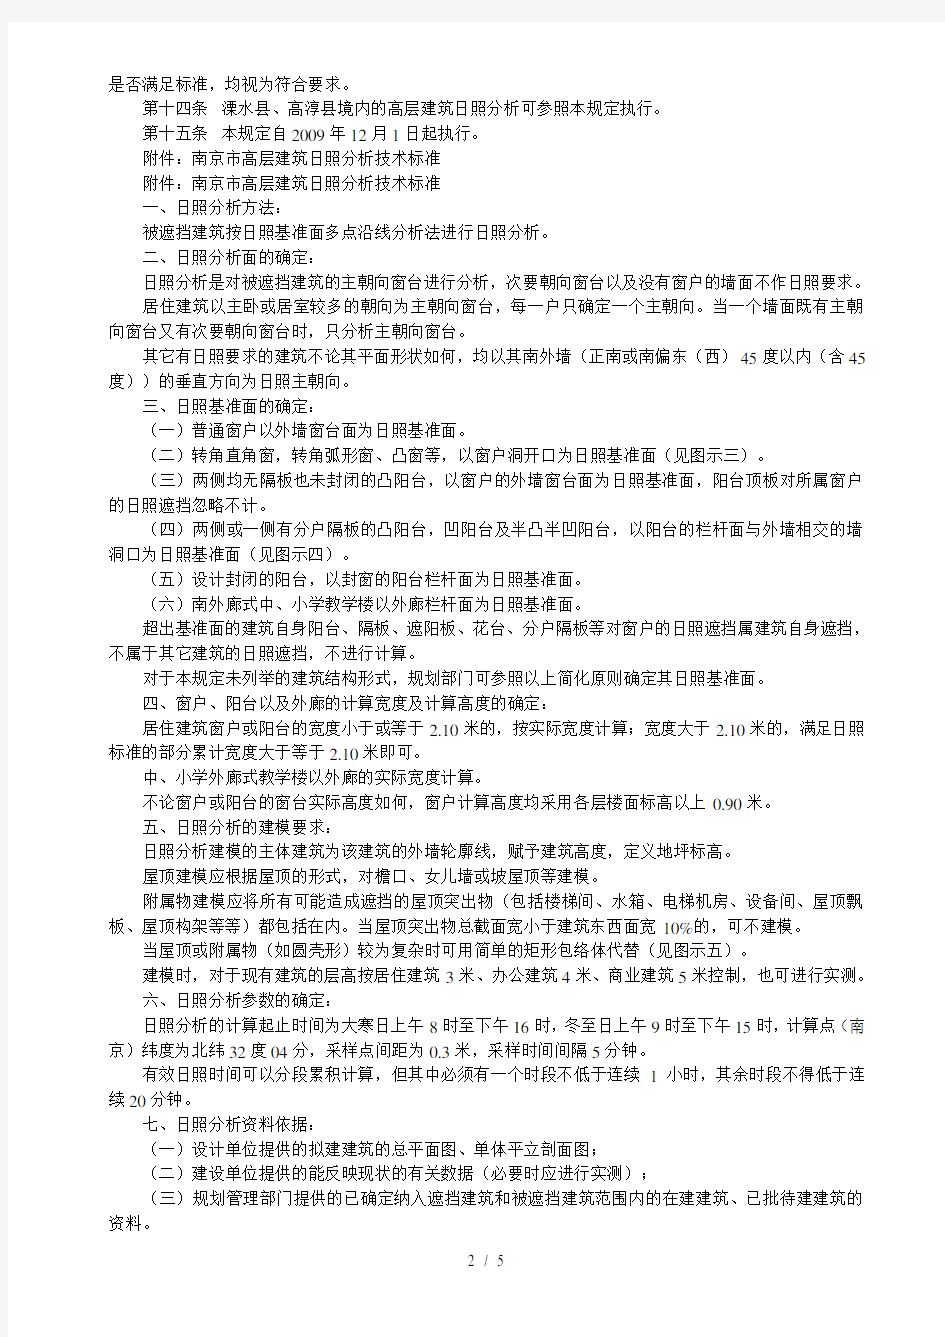 南京市高层建筑日照分析控制管理规定